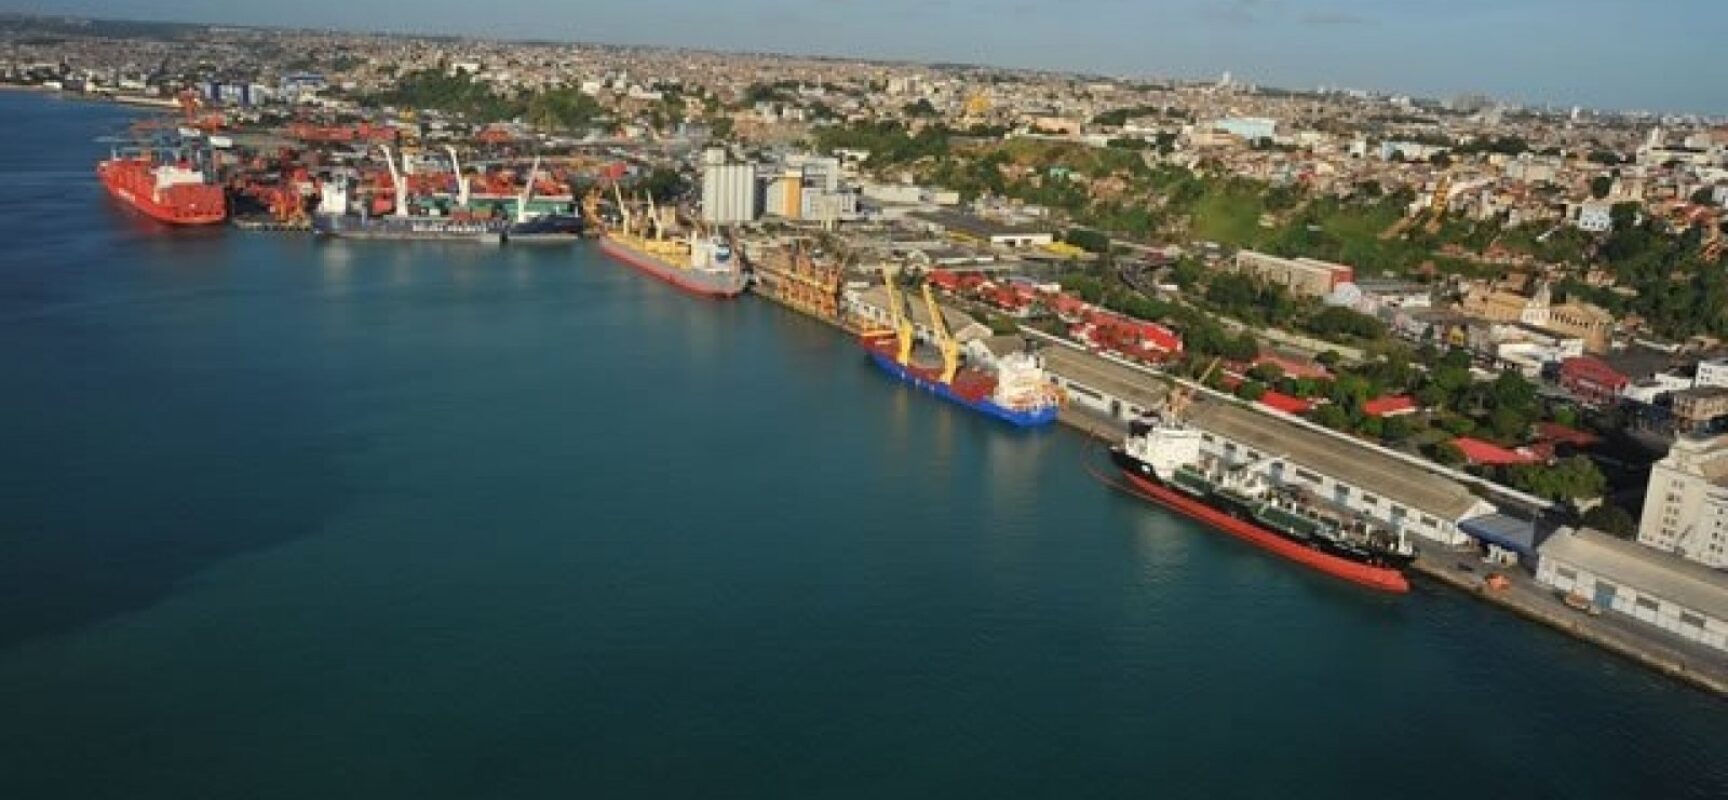 Em leilão de portos, Intermarítima leva terminal em Salvador